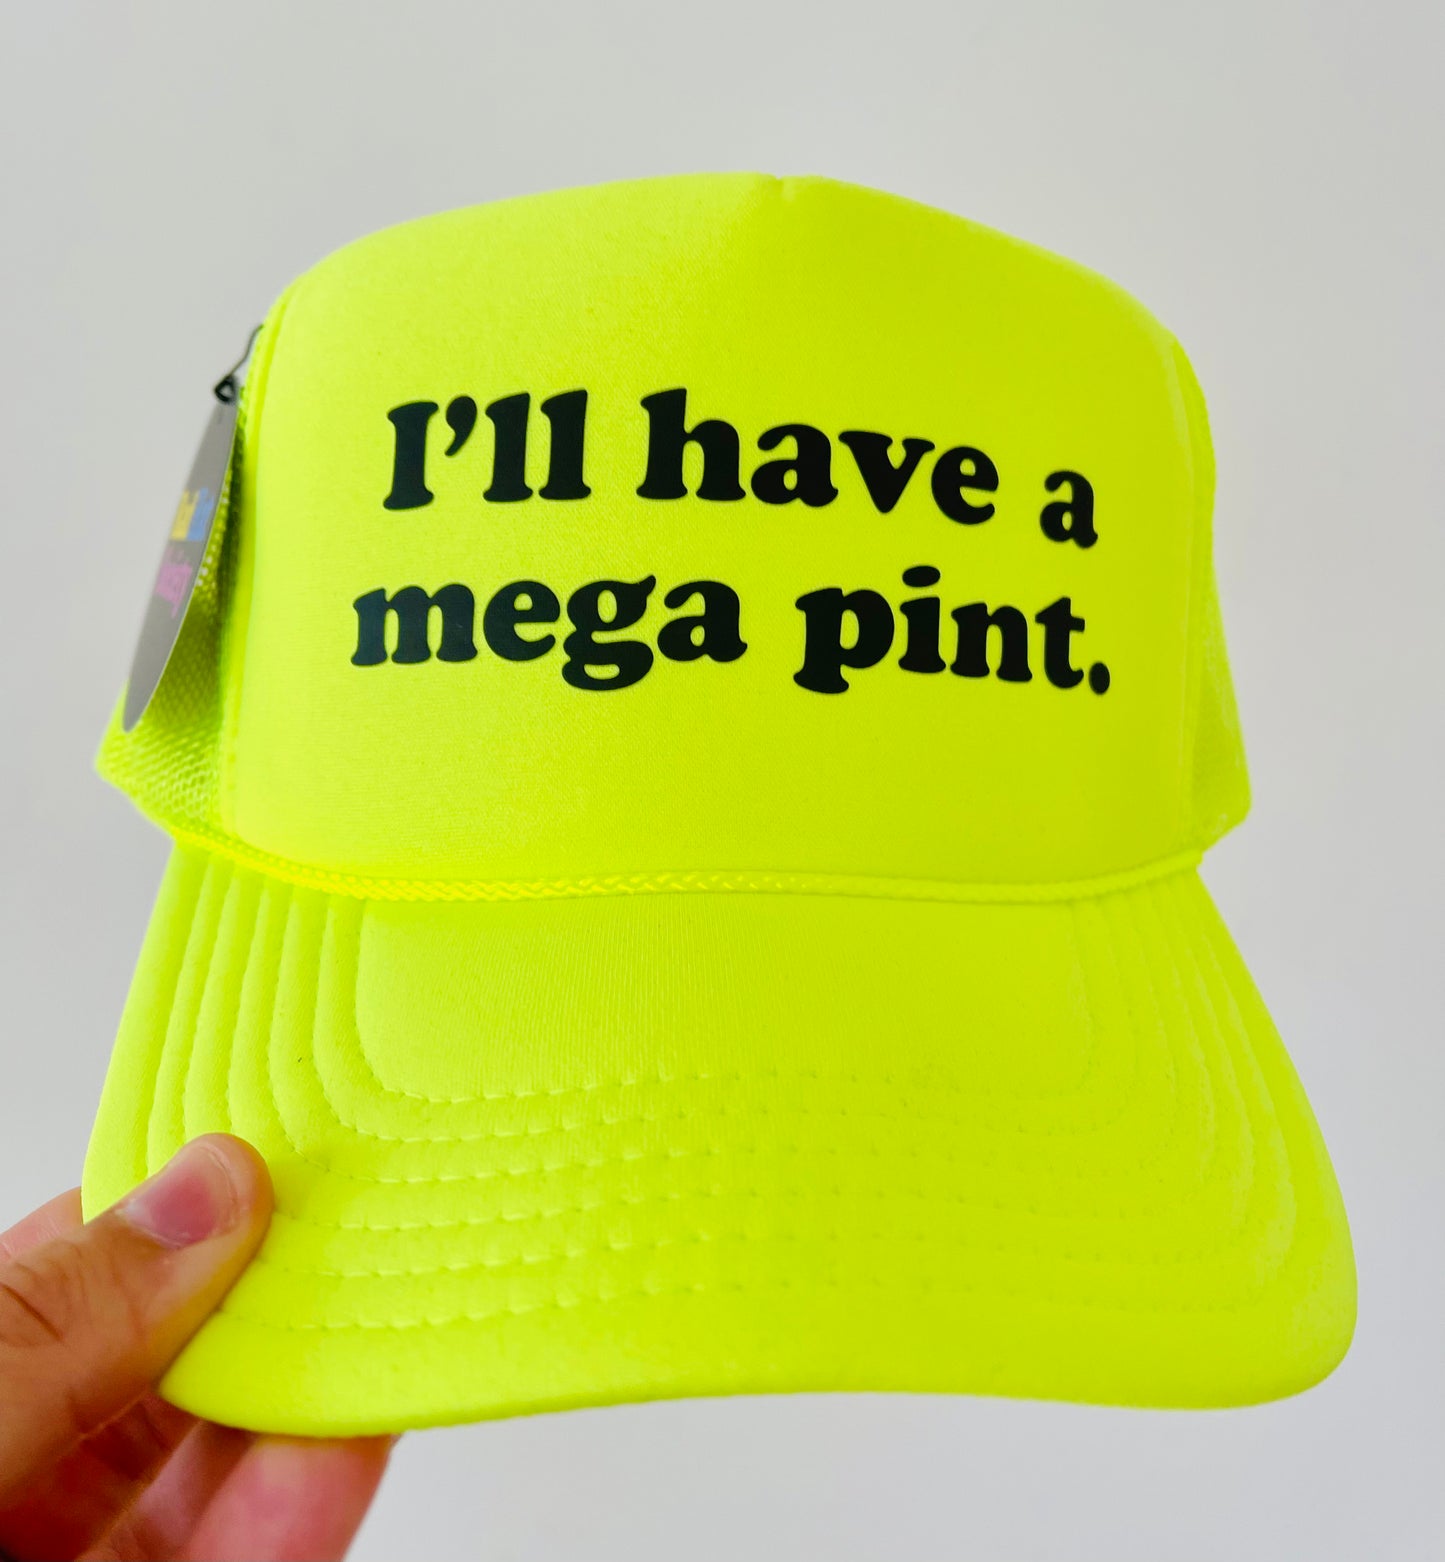 I’ll have a mega pint. (Johnny Depp)